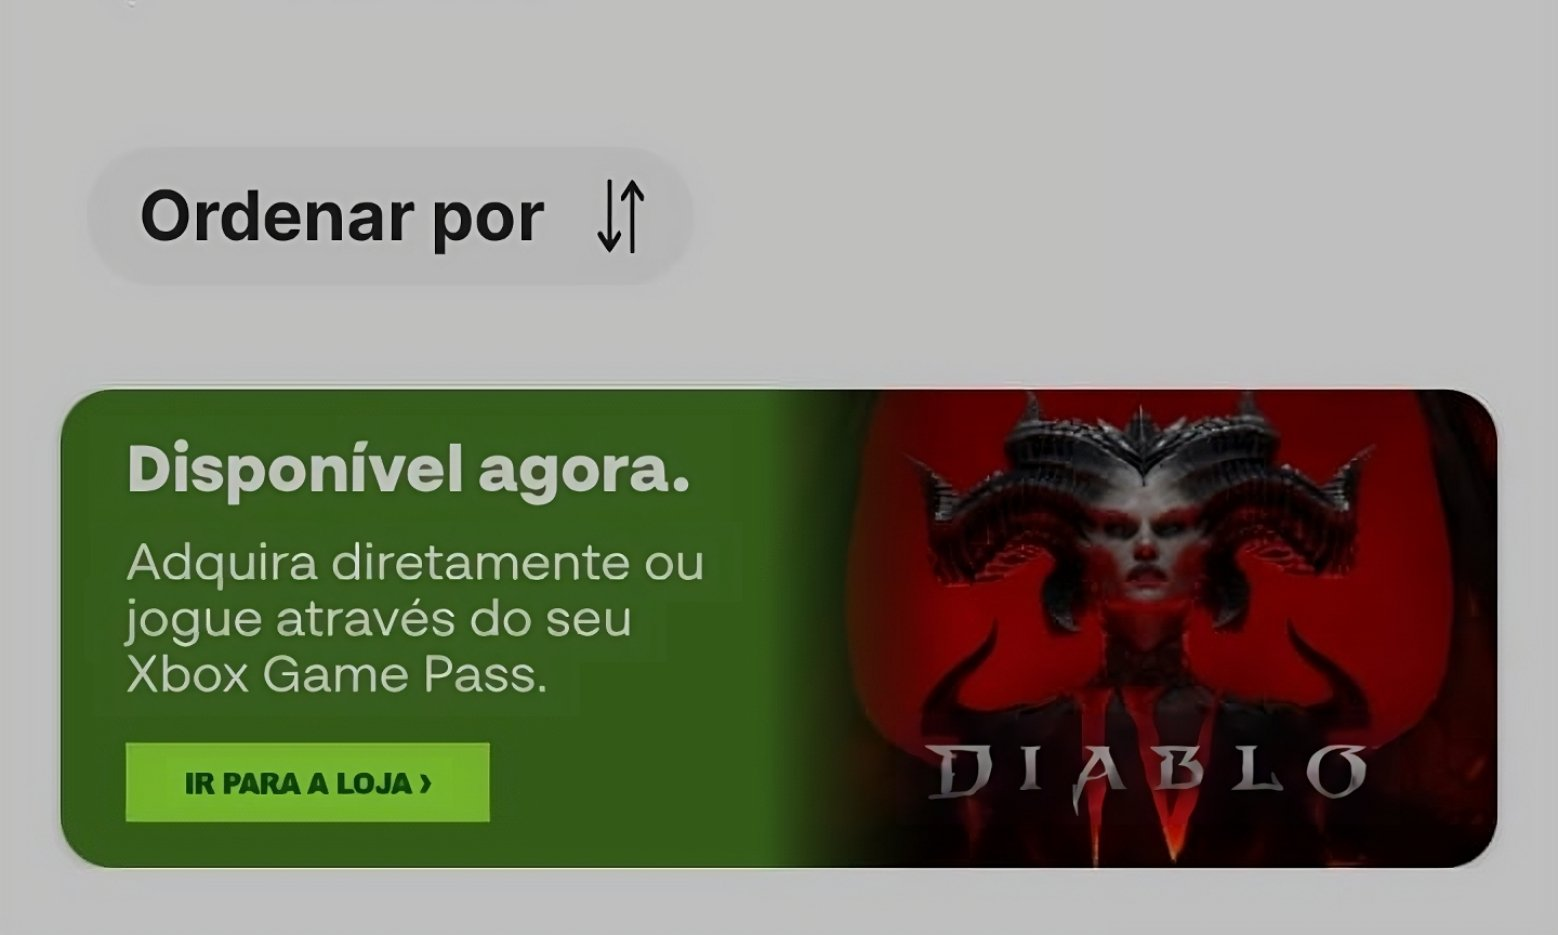 Diablo 4 ainda não vai para o Game Pass, afirma a Blizzard